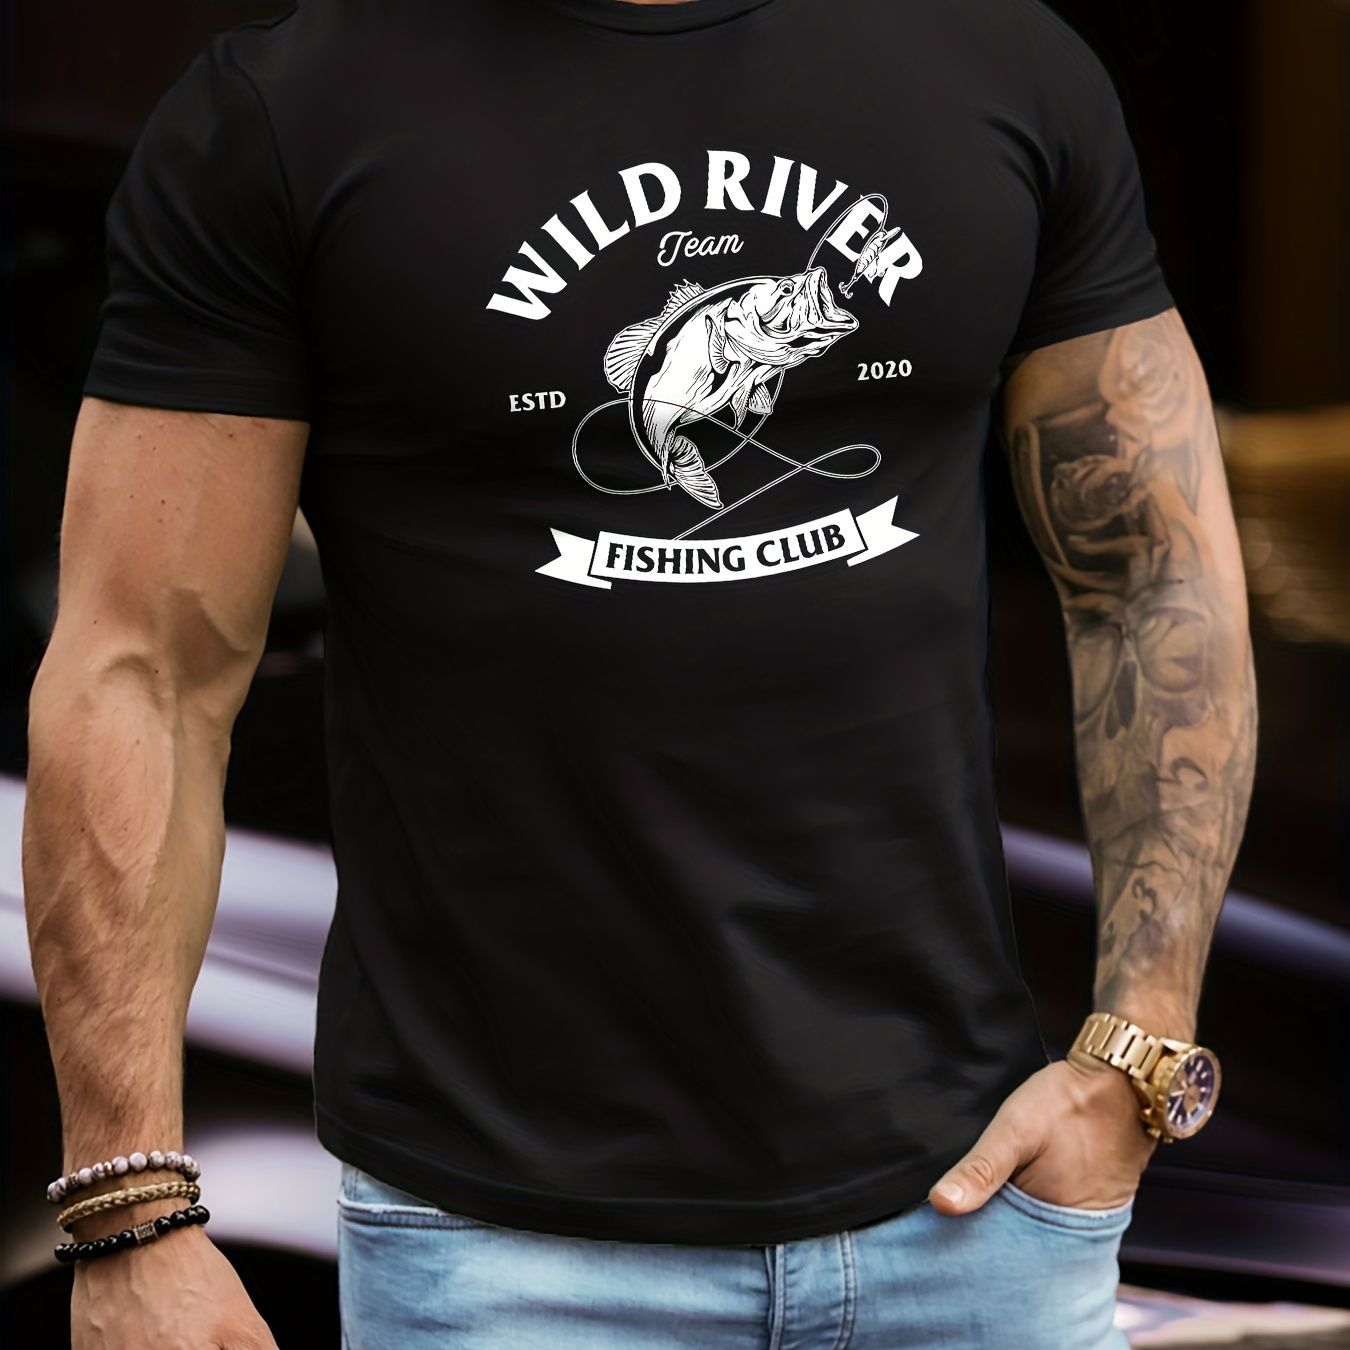 Rivers Fishing Shirts - Temu